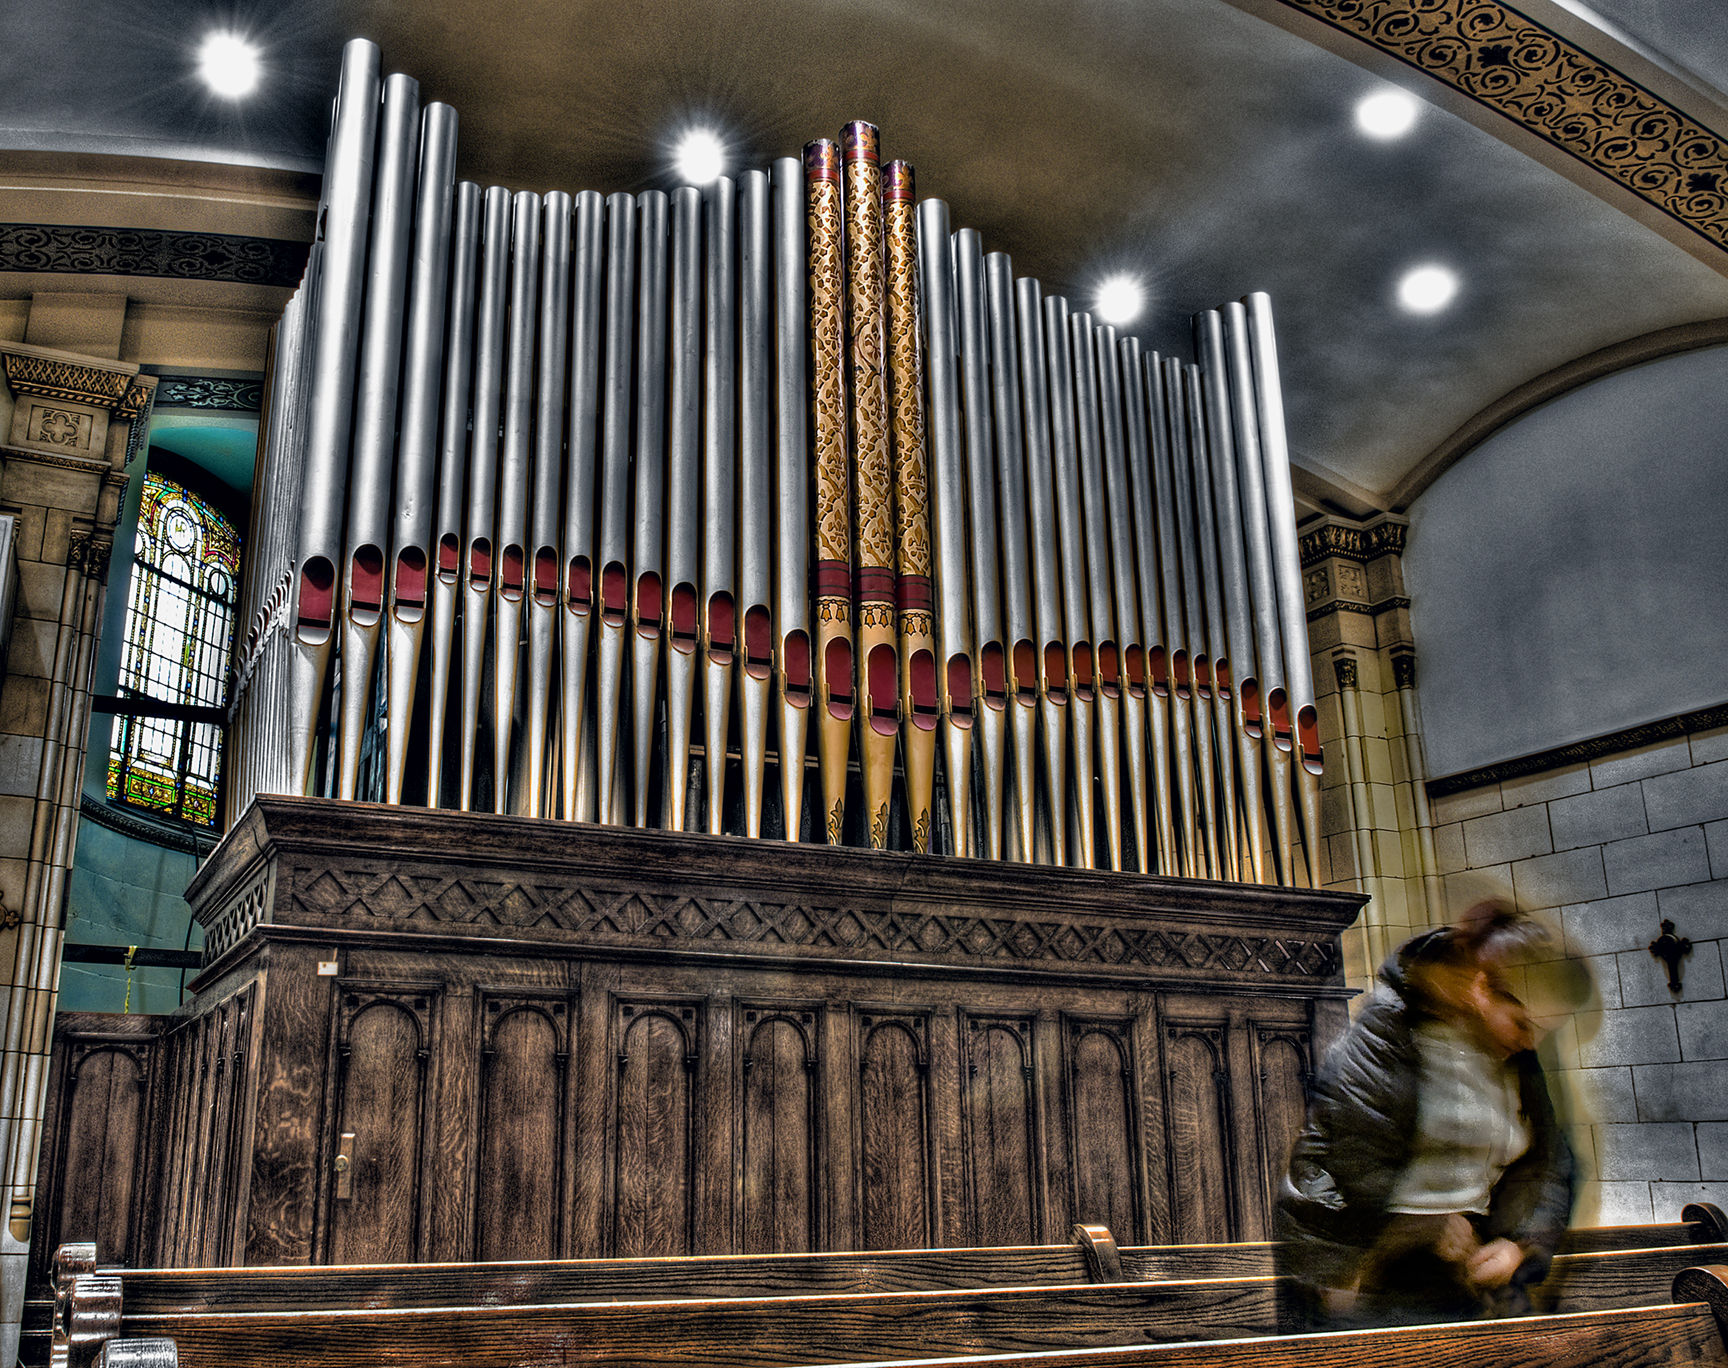 the-church-organ.jpg